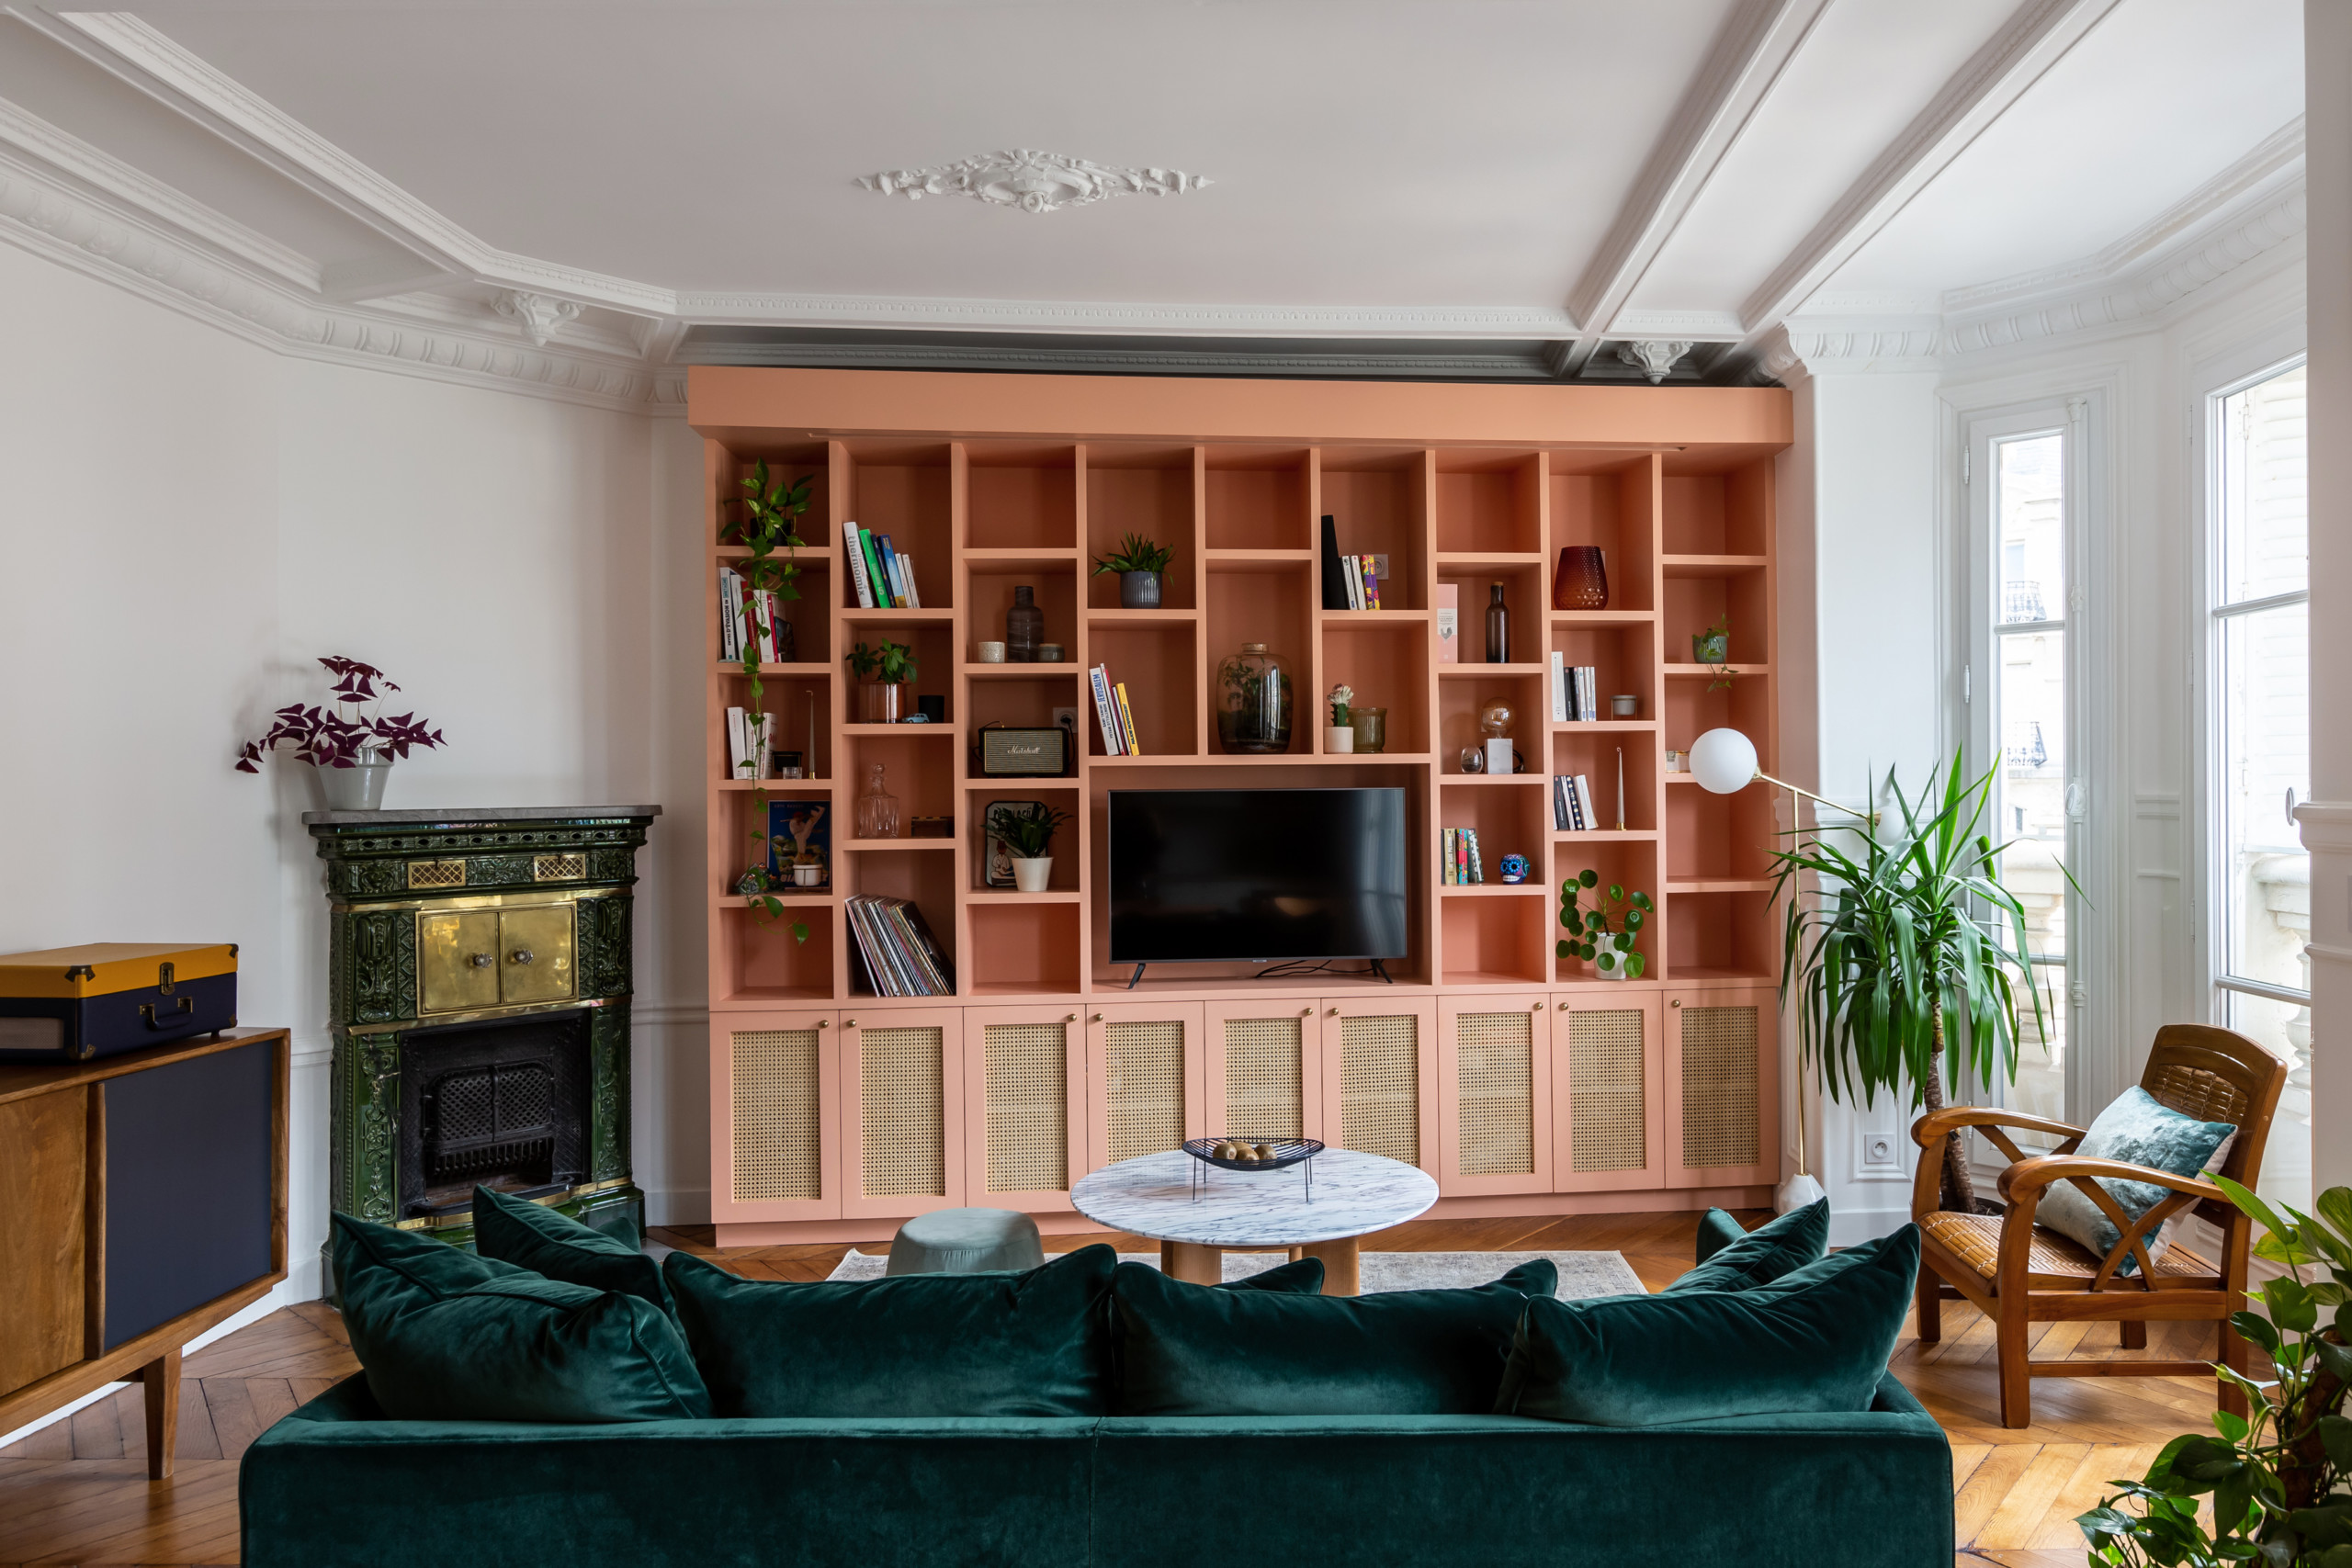 Un intérieur vibrant et évolutif dans 67 m² à Paris - Sloft Magazine